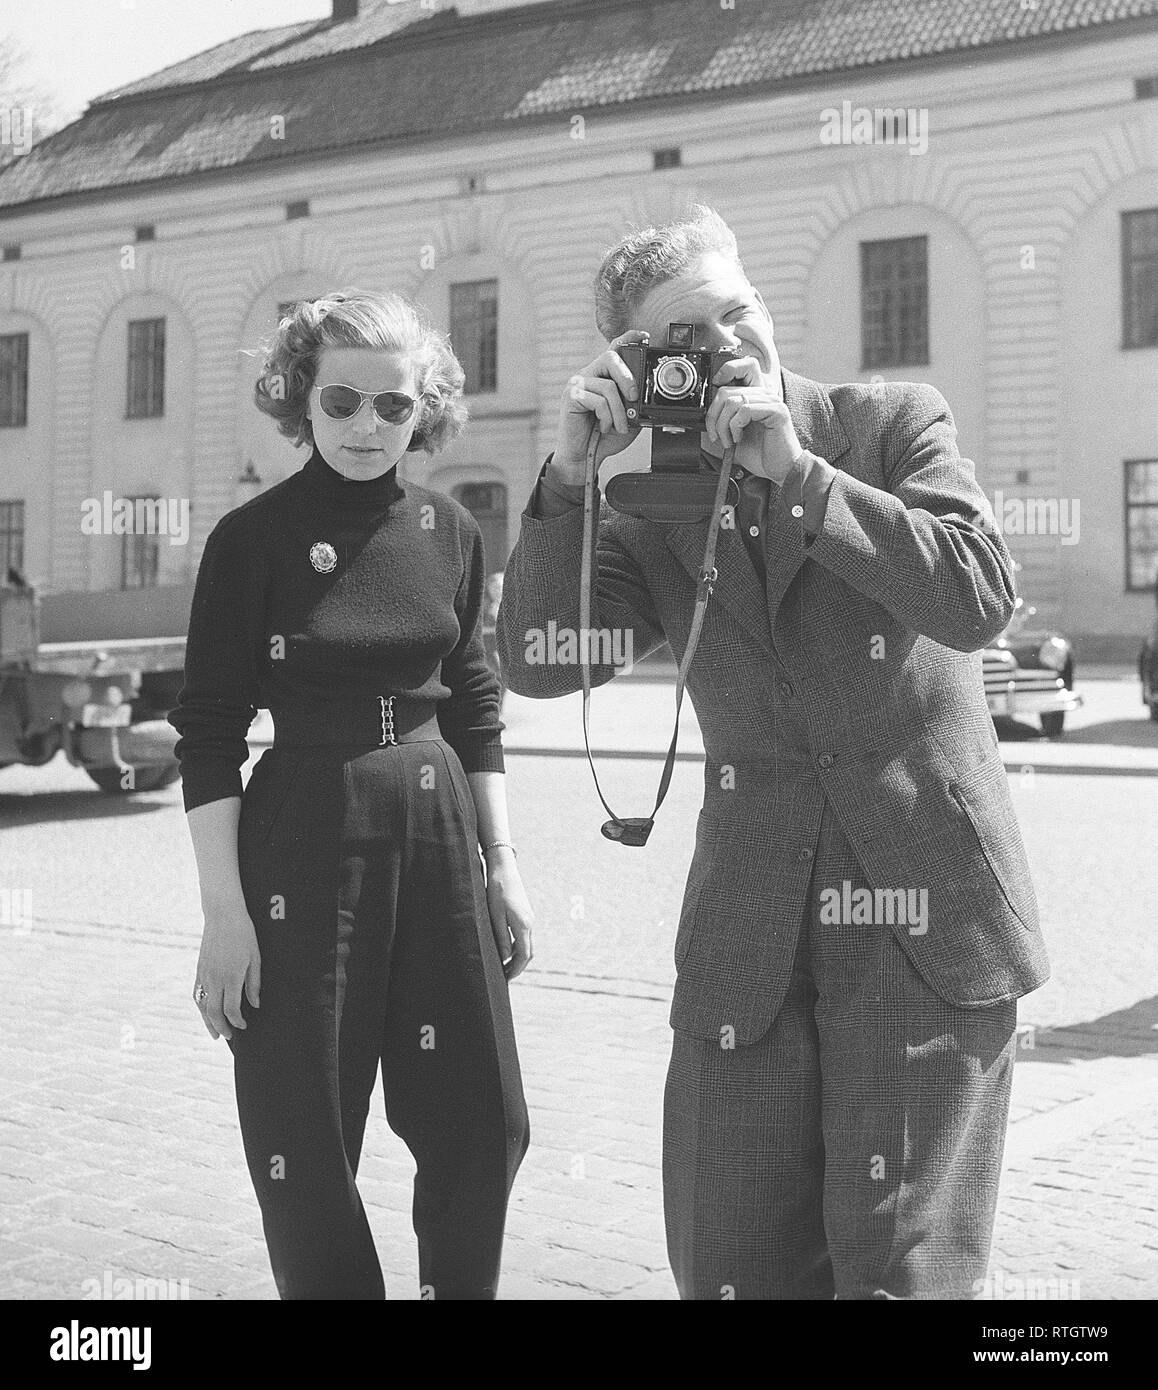 Amateurfotograf in den 1950er Jahren Ein junger Mann zielt mit seiner Kamera auf den Fotografen. Er ist der us-amerikanische Schauspieler Burgess Meredith, der ein Foto seiner schwedischen Frau Kaja Sundsten macht. Schweden 1952. Foto Kristoffersson Ref. BF78-1 Stockfoto